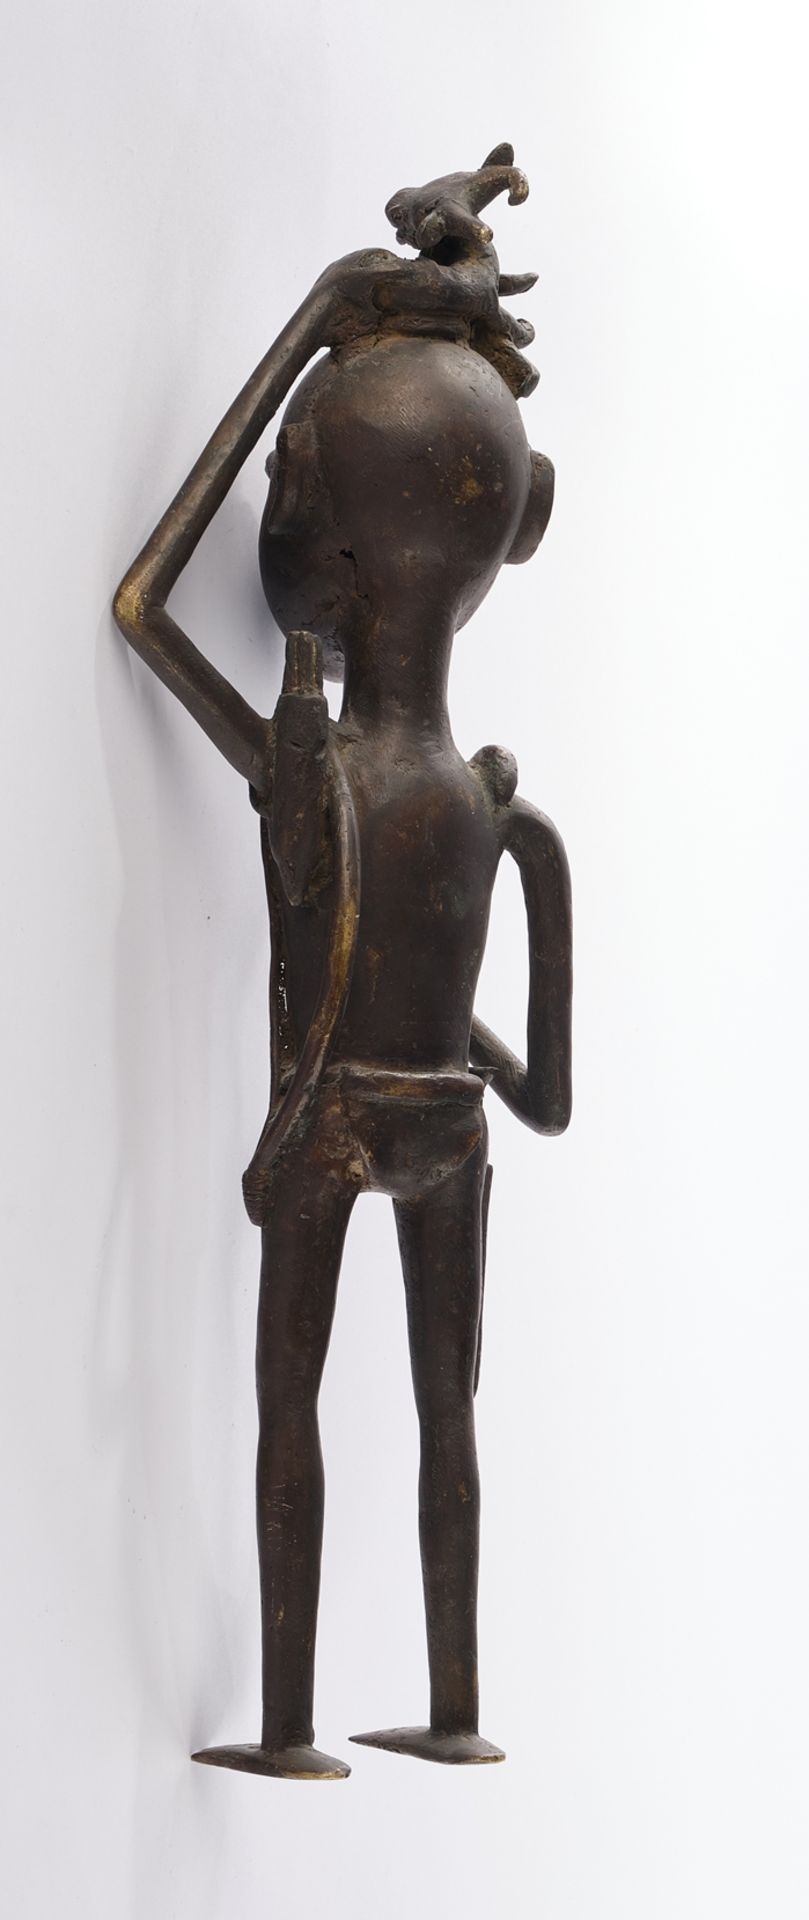 Figur, "Jäger", Ashanti, Ghana, Afrika, Bronze, patiniert, die erlegte Gazelle auf dem Kopf tragend - Bild 2 aus 2